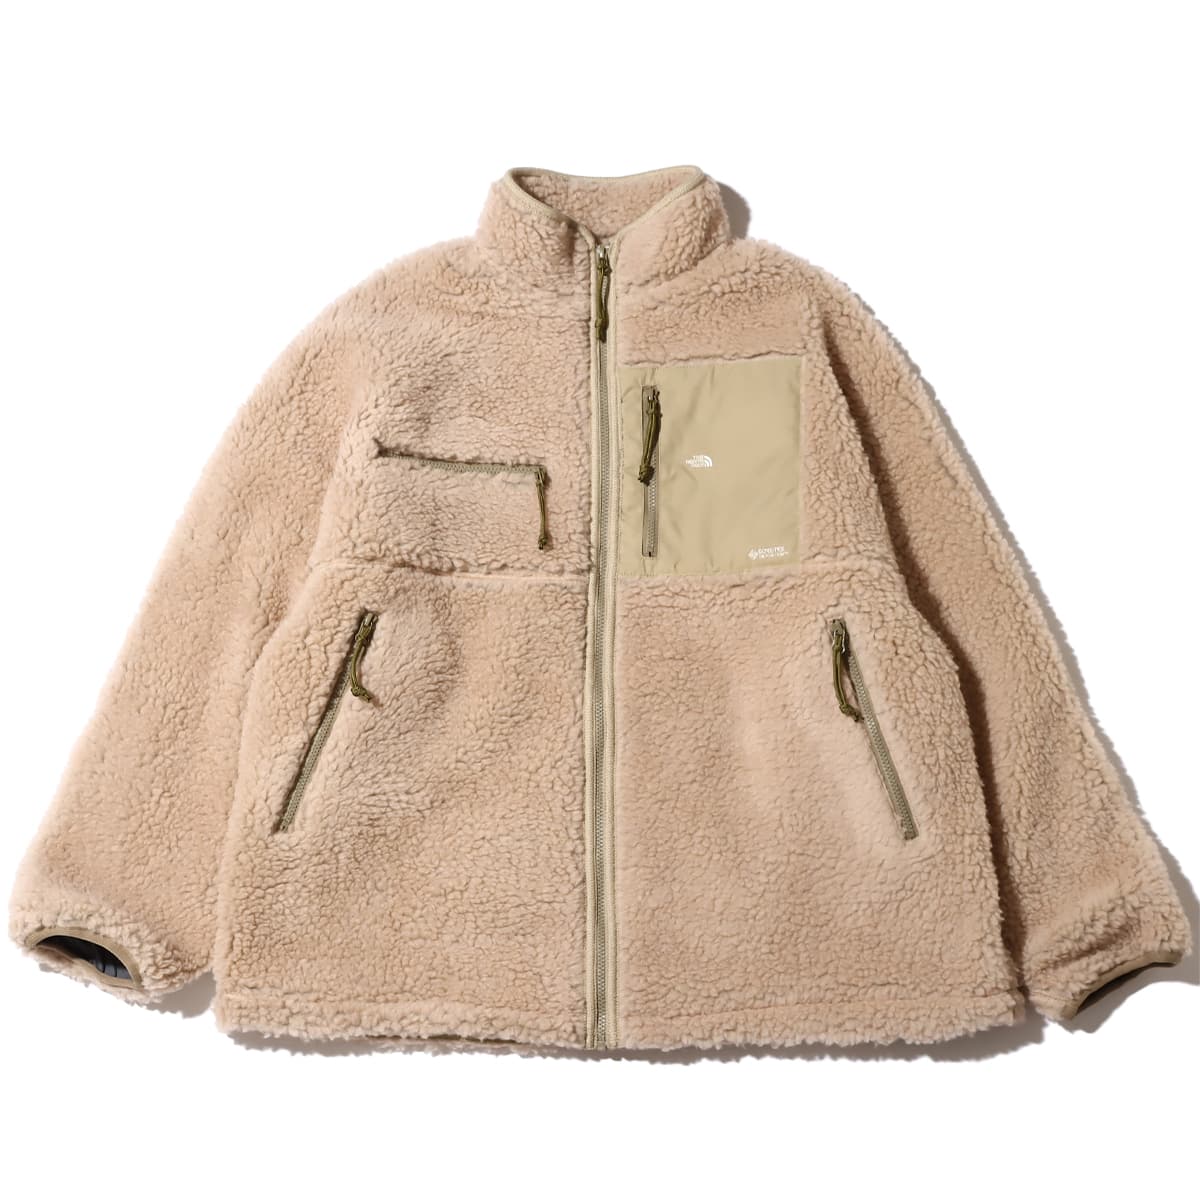 THE NORTH FACE PURPLE LABEL Wool Boa Fleece Field Jacket